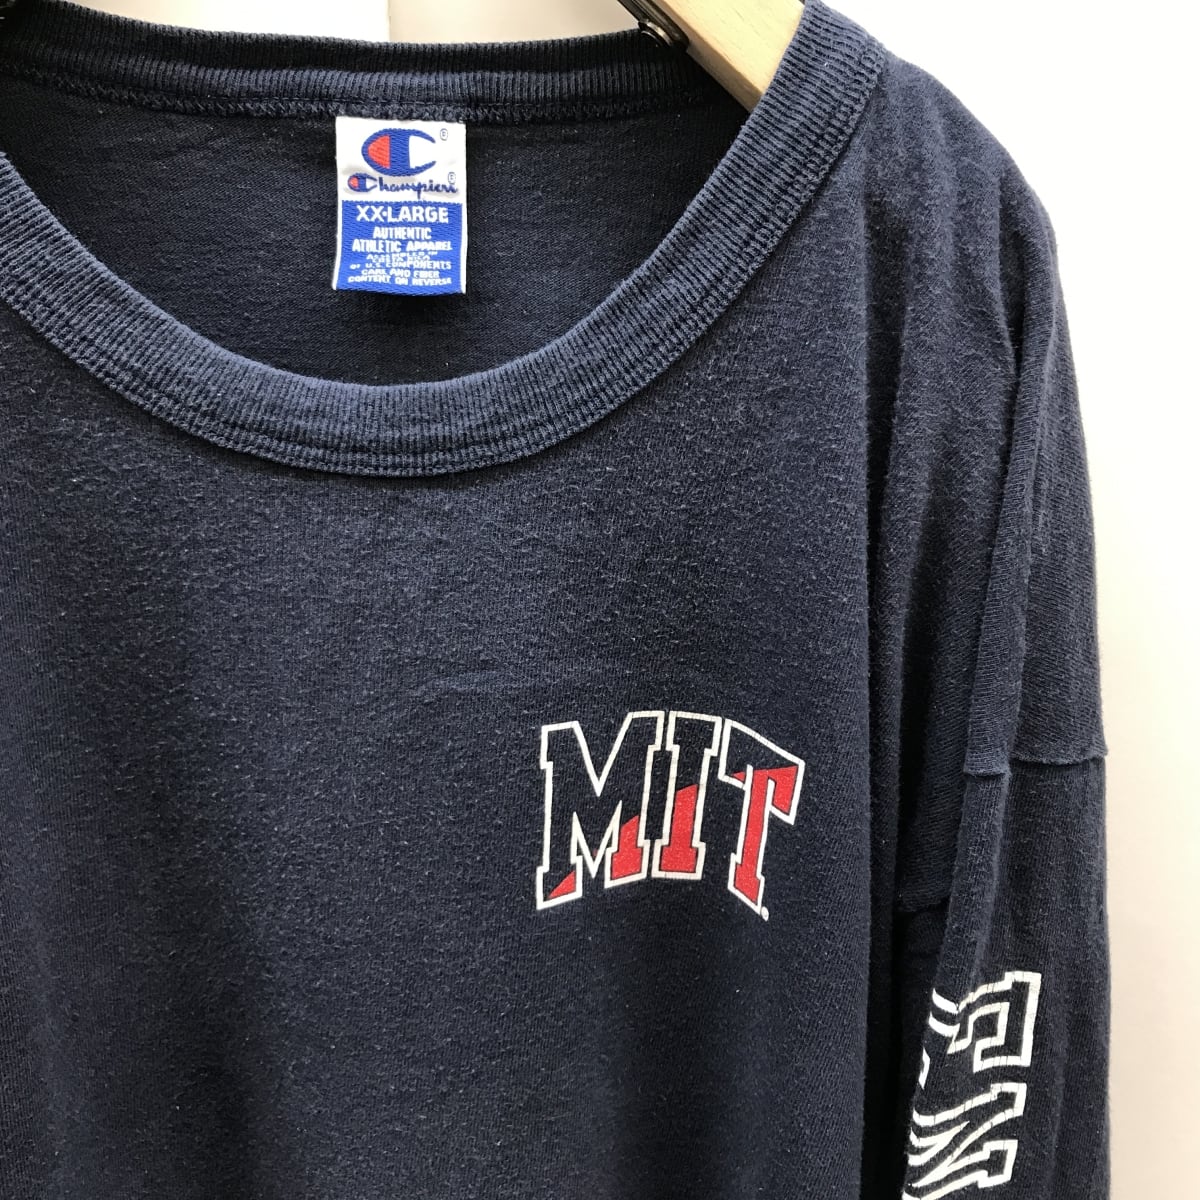 MIT チャンピオン　Tシャツ